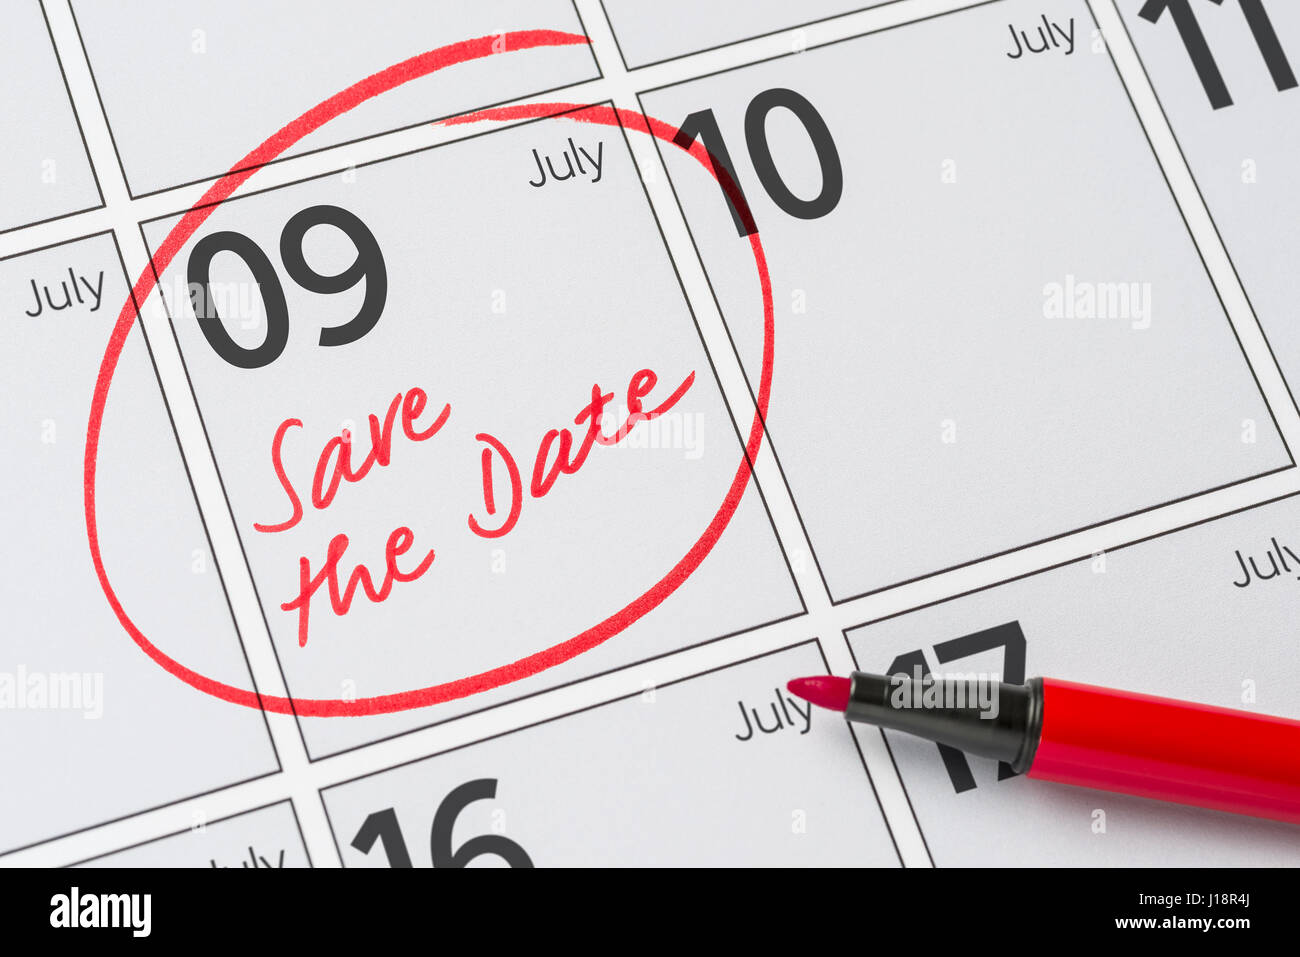 Enregistrer la date inscrite sur un calendrier - Juillet 09 Banque D'Images